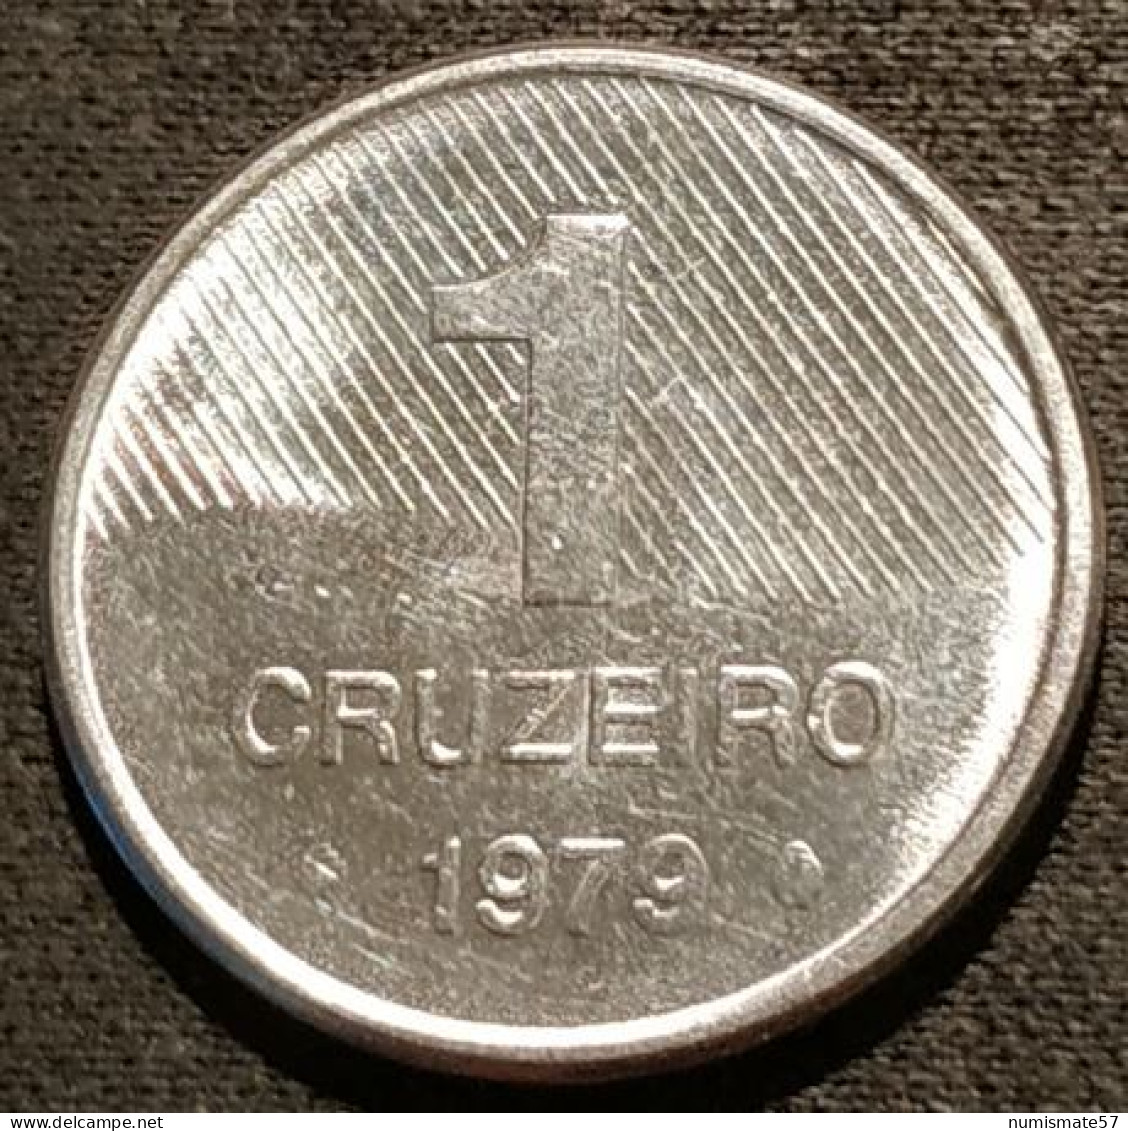 BRESIL - 1 CRUZEIRO 1979 - Canne à Sucre - KM 590 - Brasil - Brazil - Brésil